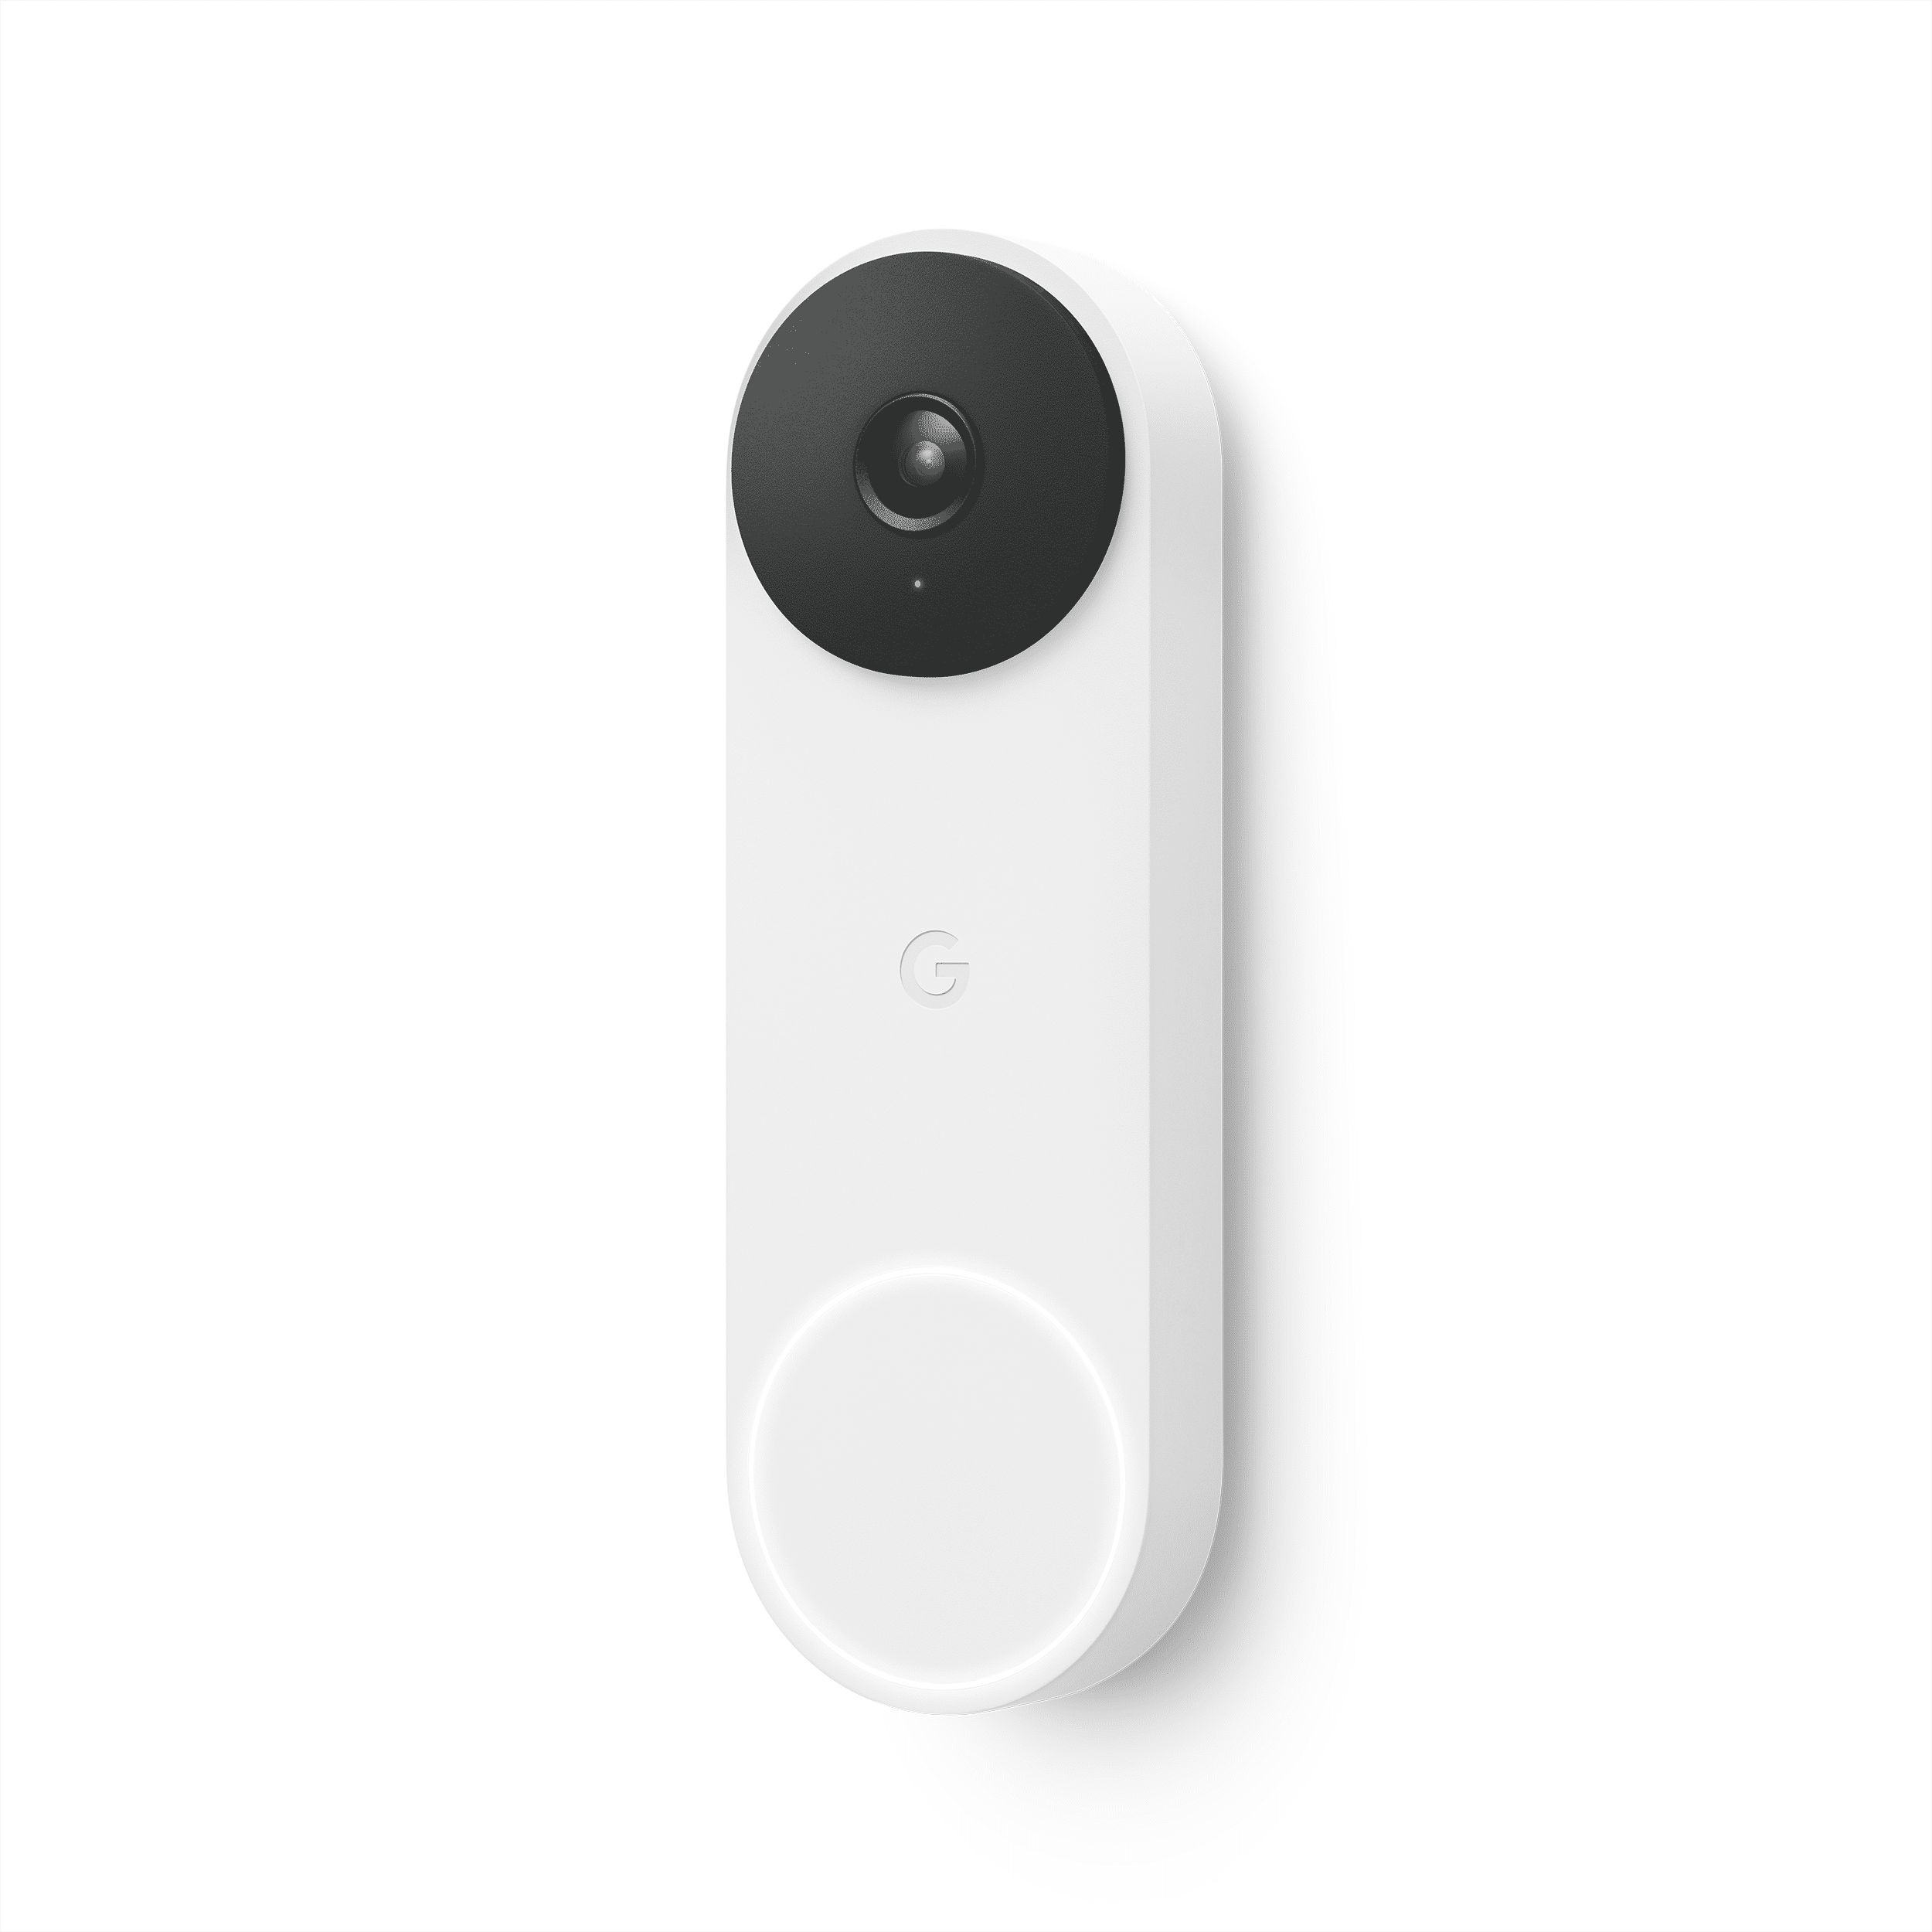 Google Nest Doorbell (Wired, 2nd gen) - Video Doorbell Camera - Doorbell Security Camera - Snow